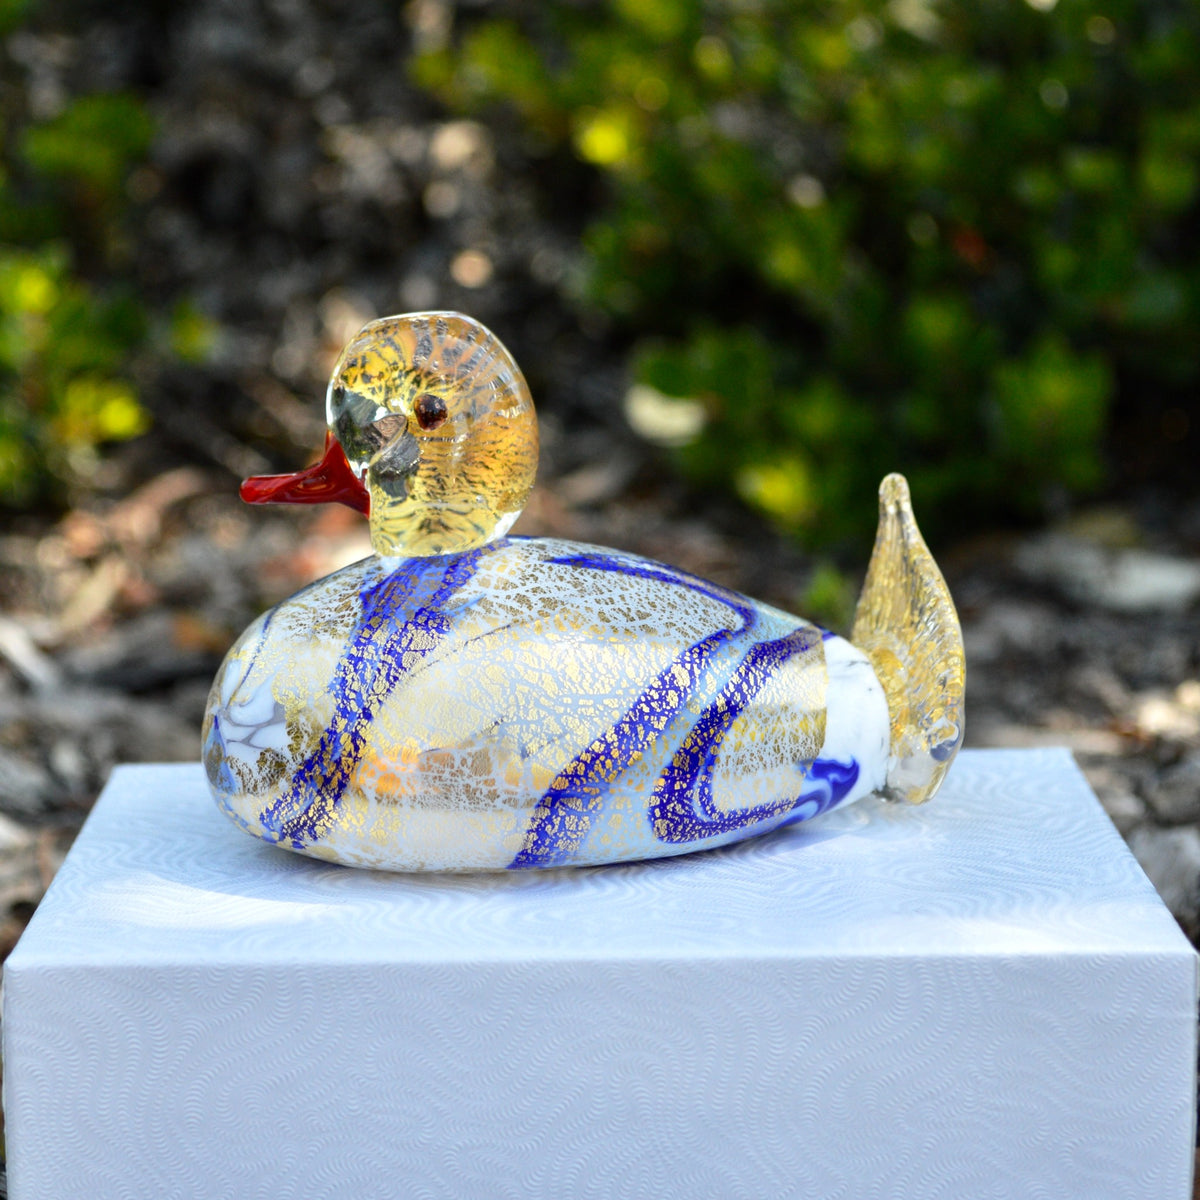 Murano Glass Duck, Decorative Figurine, Made in Italy - My Italian Decor